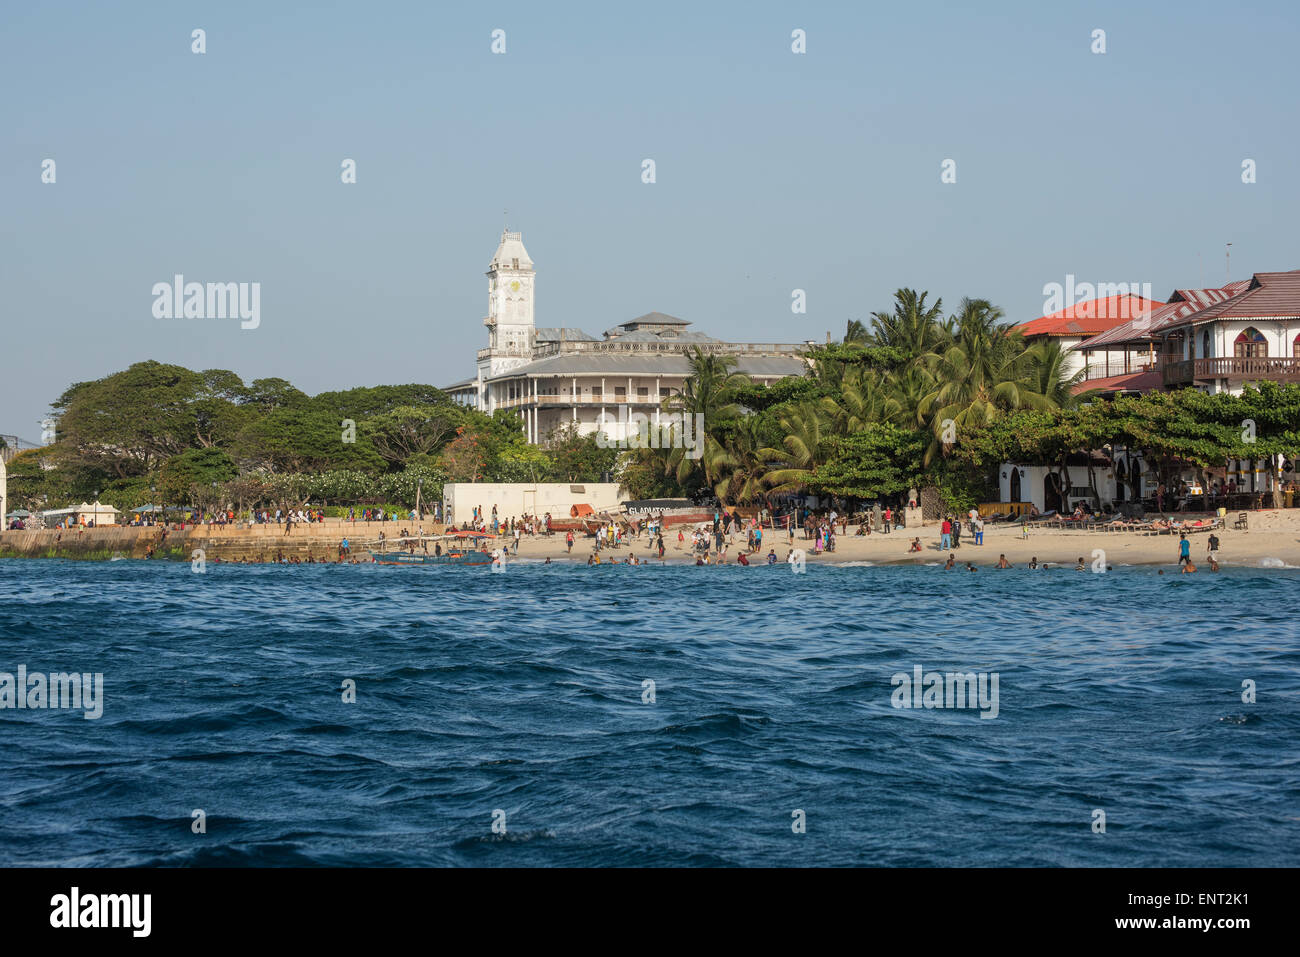 Vista dal mare alla città, la spiaggia e la casa delle meraviglie, Stone Town, Zanzibar, Unguja, Arcipelago di Zanzibar, Tanzania Foto Stock